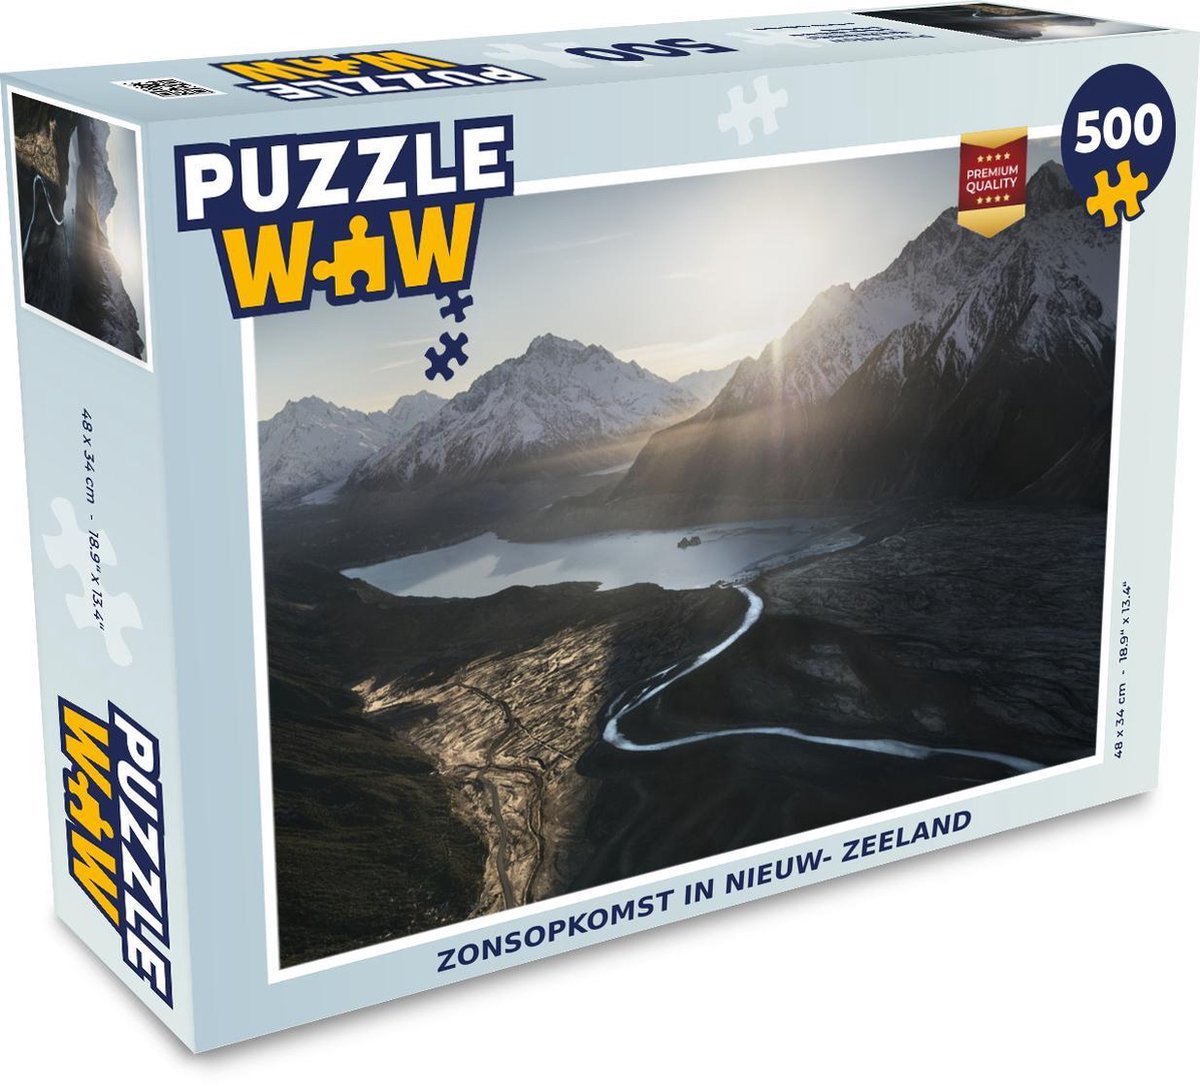 Afbeelding van product PuzzleWow  Puzzel Zonsopkomst in Nieuw- Zeeland - Legpuzzel - Puzzel 500 stukjes